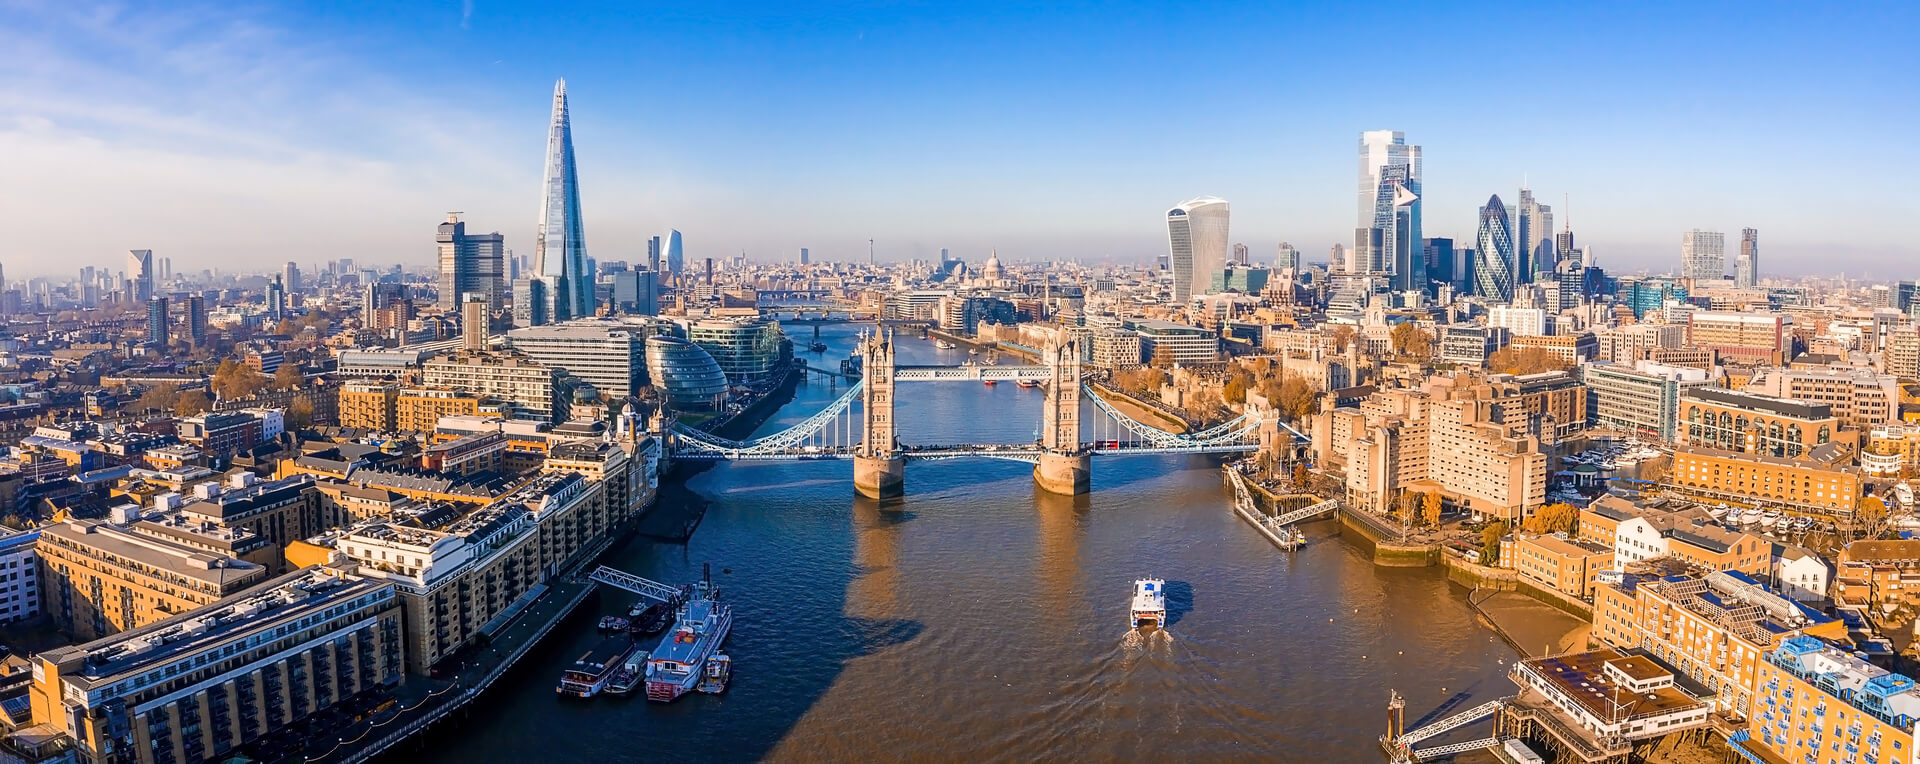 Вид с воздуха на Тауэрский мост в Лондоне. Один из самых известных мостов и основных достопримечательностей этого города. Красивая панорама лондонского Тауэрского моста.